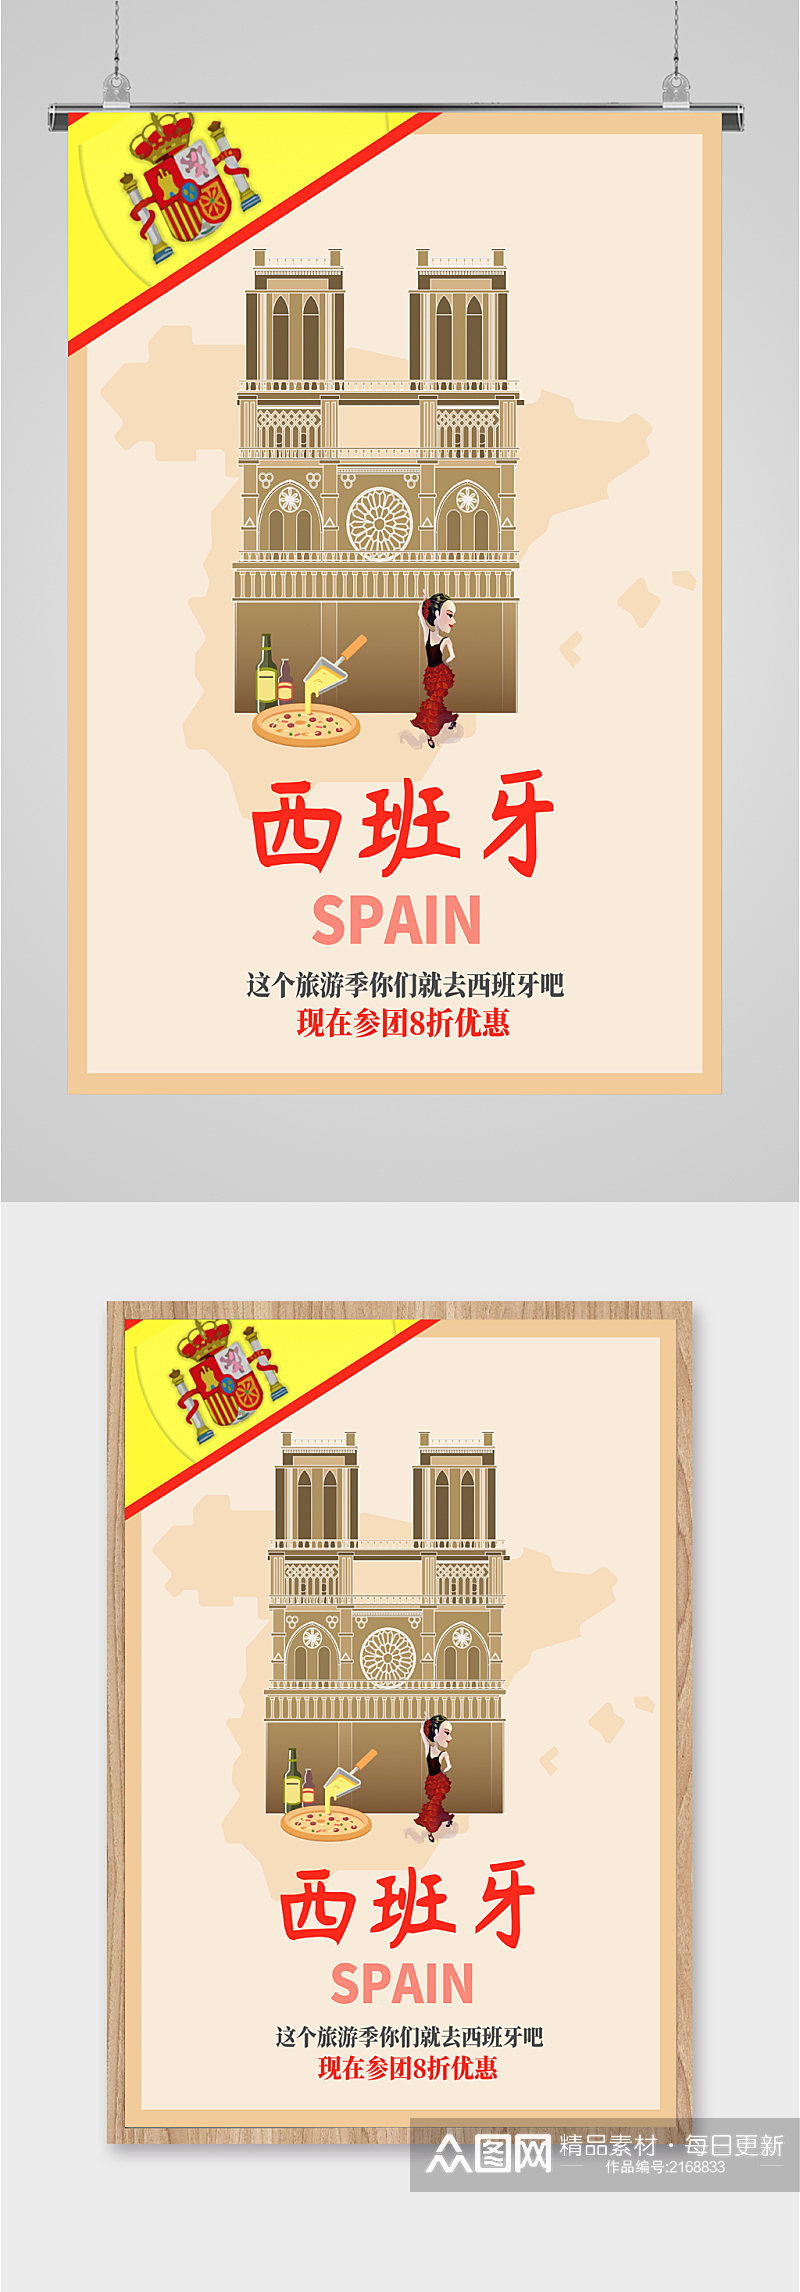 西班牙出国旅游海报素材